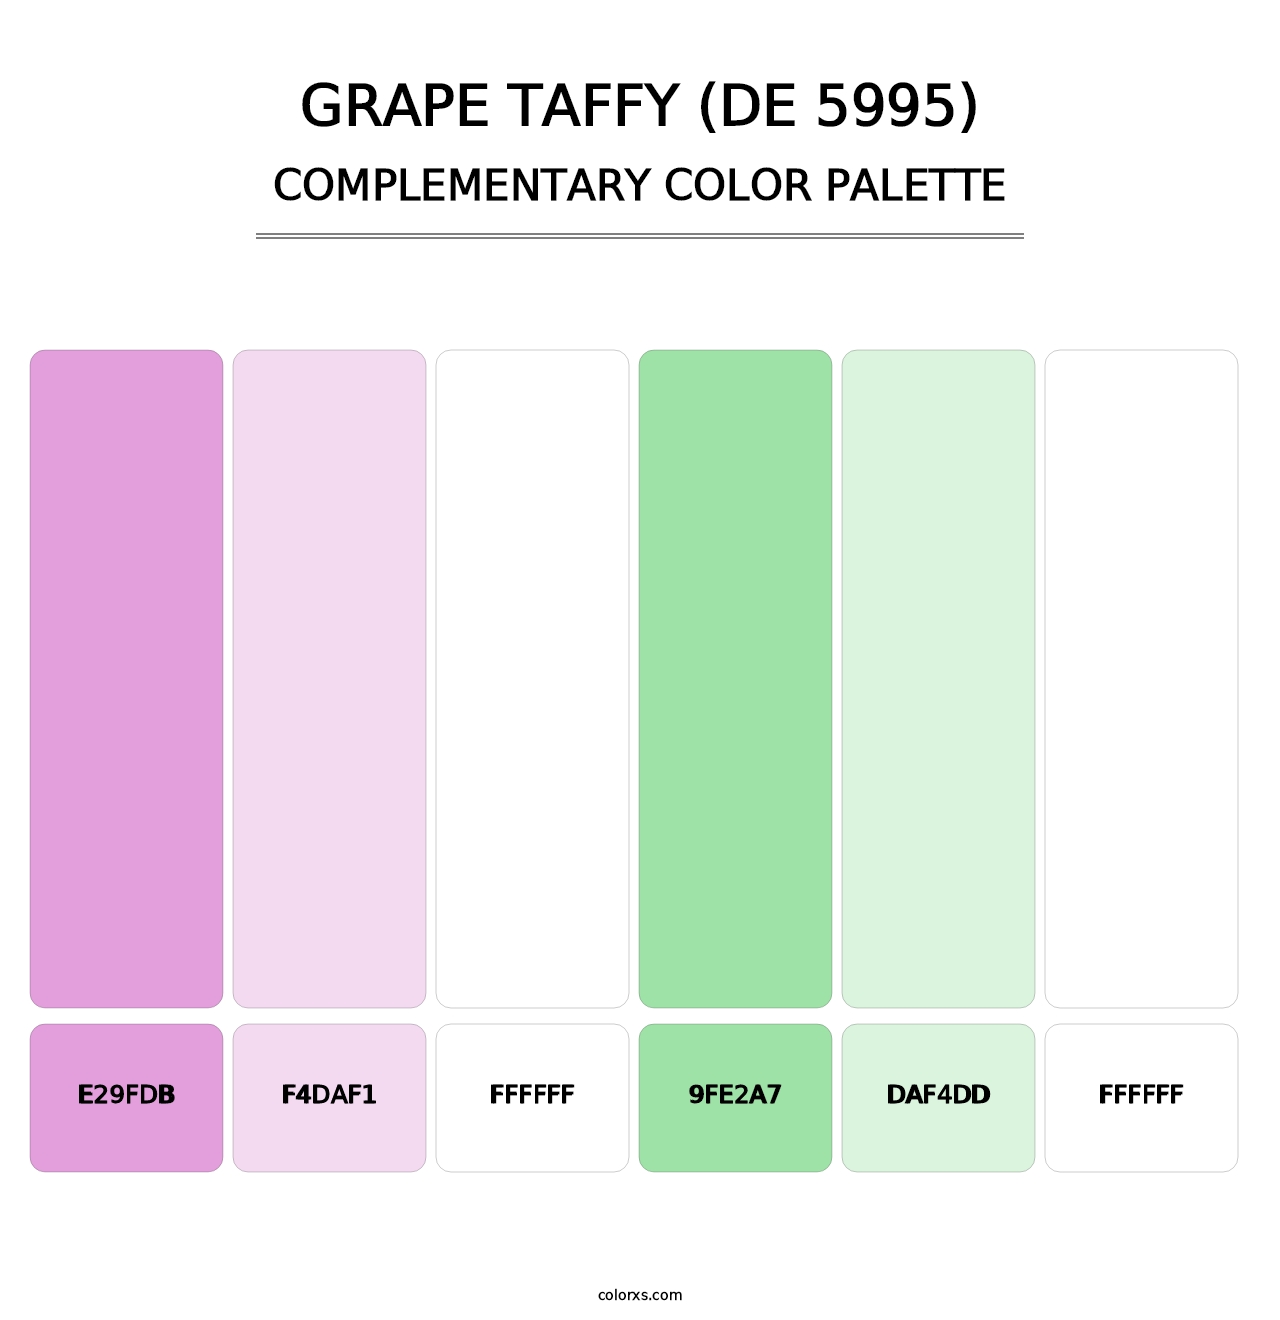 Grape Taffy (DE 5995) - Complementary Color Palette